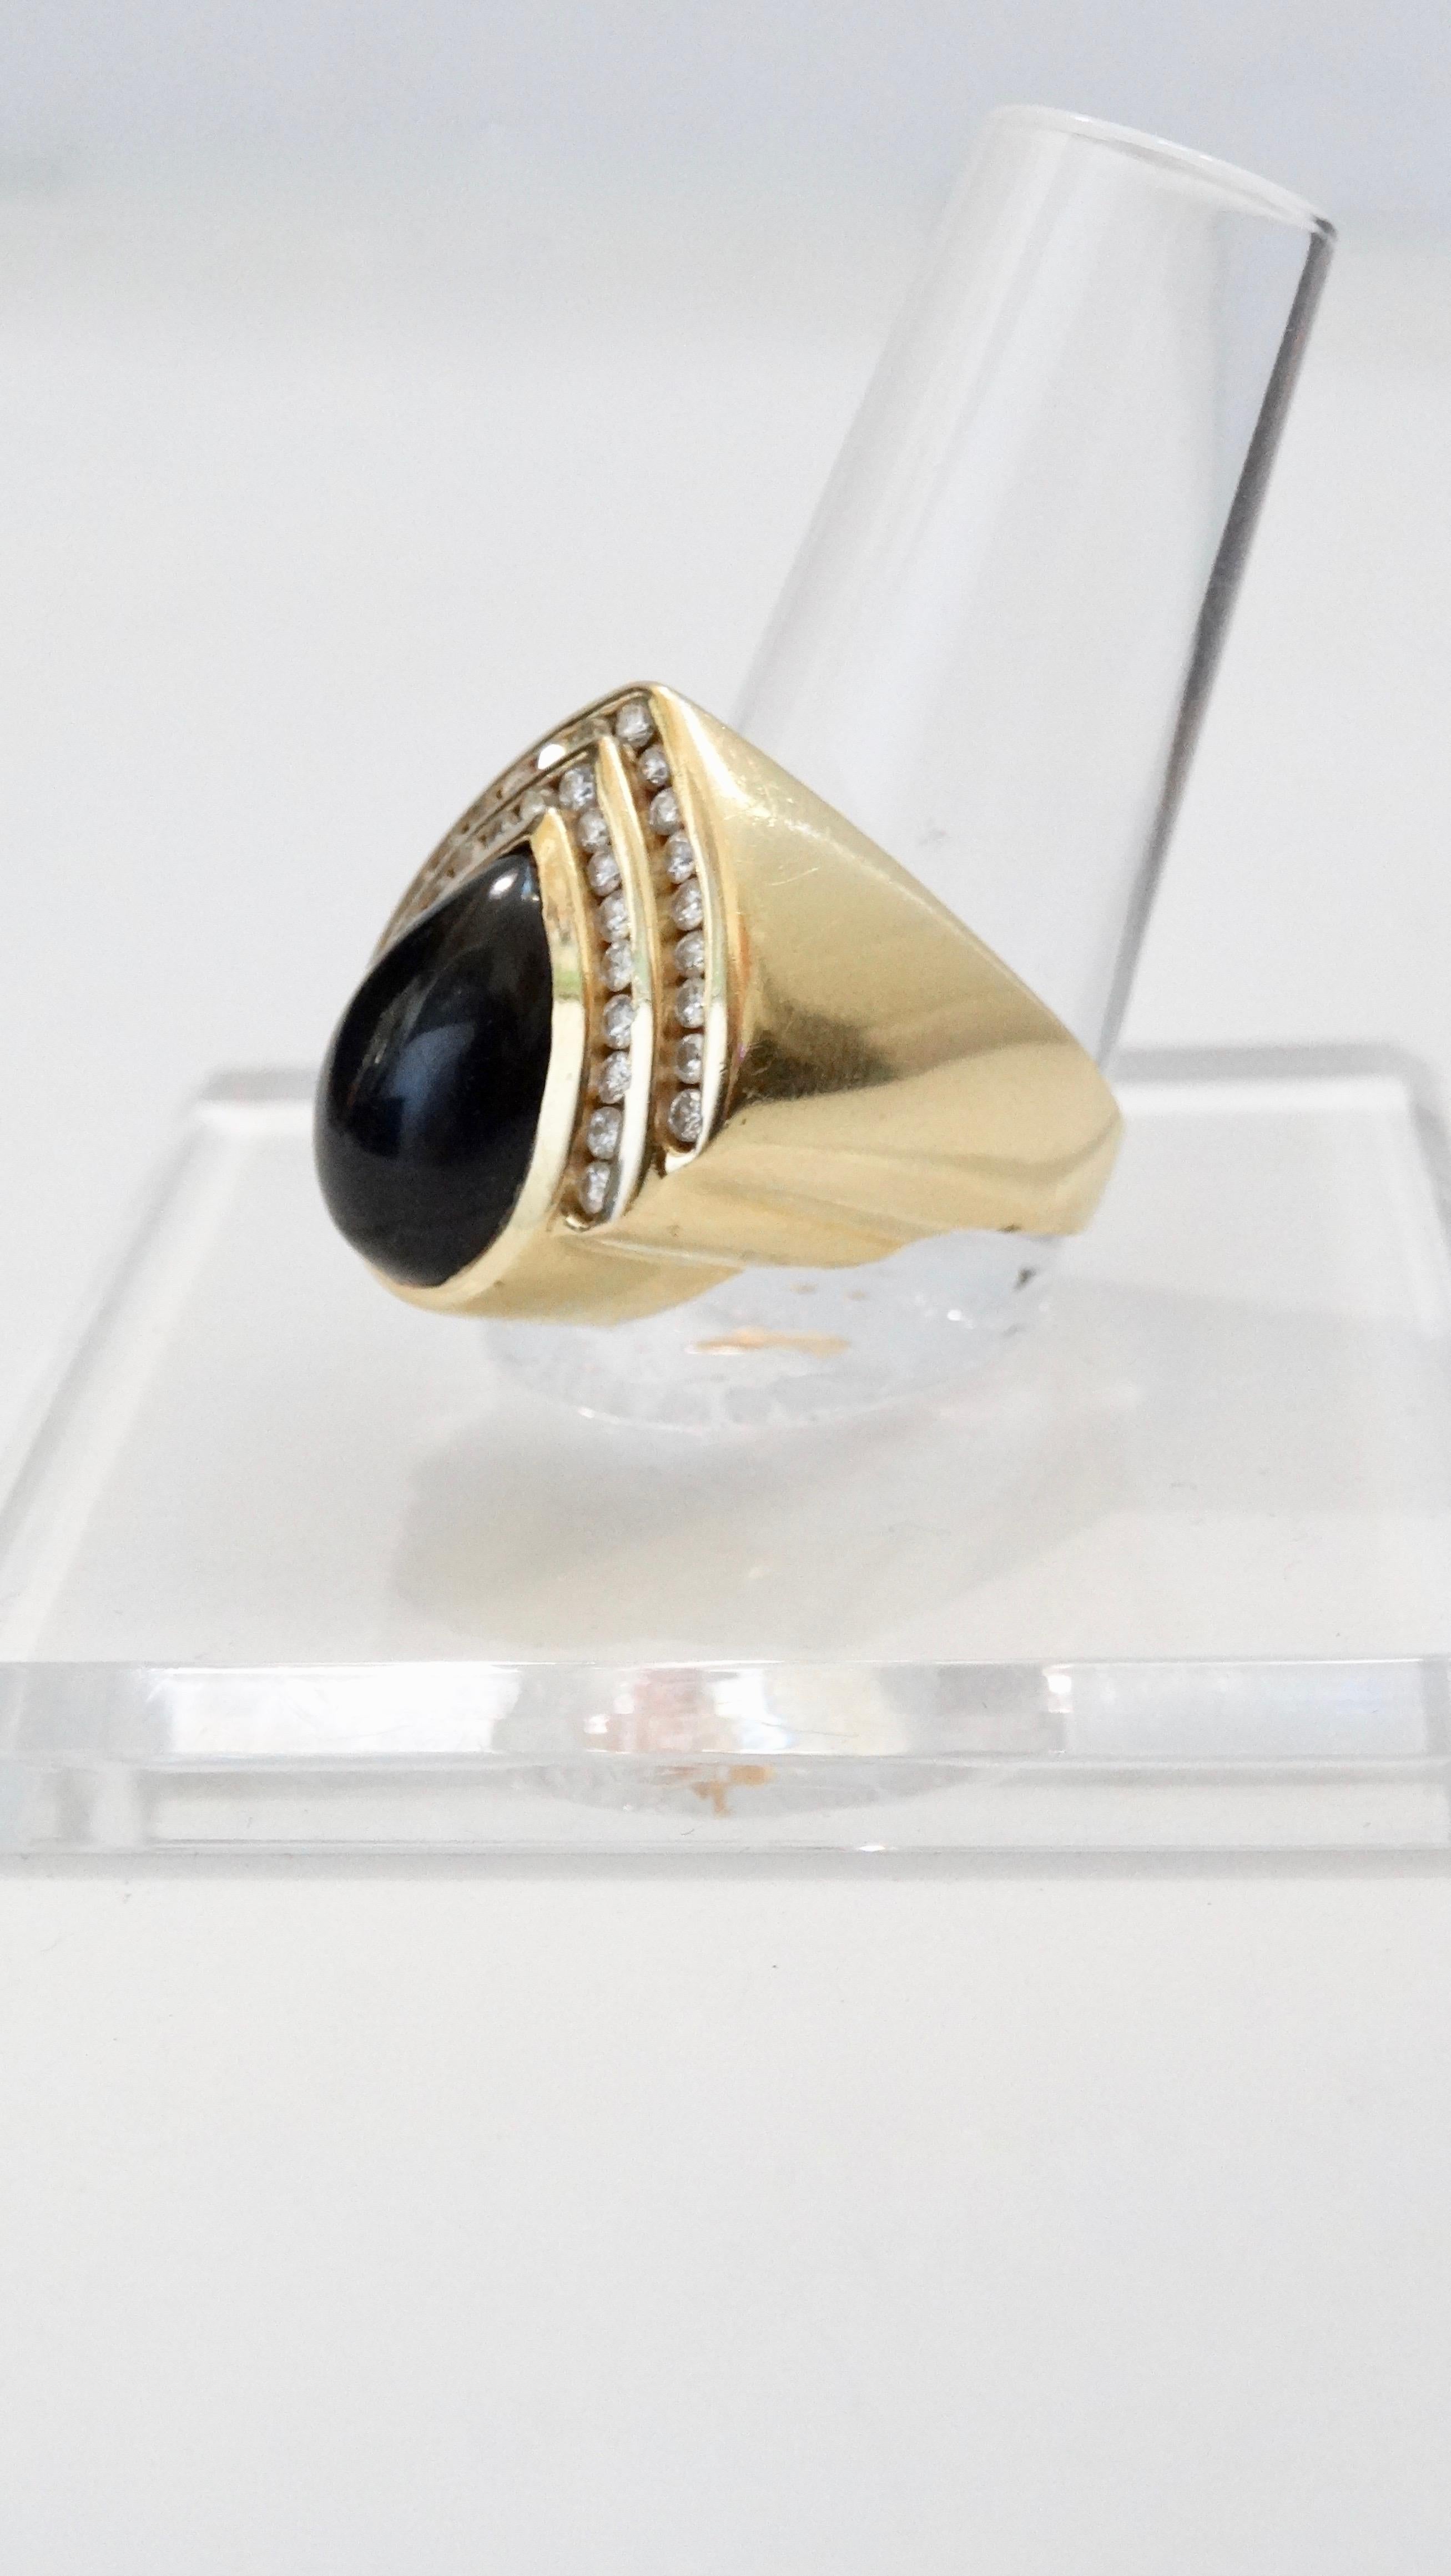 Wunderschöner tropfenförmiger Ohrring und Ring aus 14-karätigem Gold mit einem Onyx als Mittelstein und zwei Reihen VS1-Diamanten. Das Gesamtgewicht in Gramm beträgt 25,27 und der Ring hat die Größe 7,5. Die Ohrringe haben eine durchbrochene